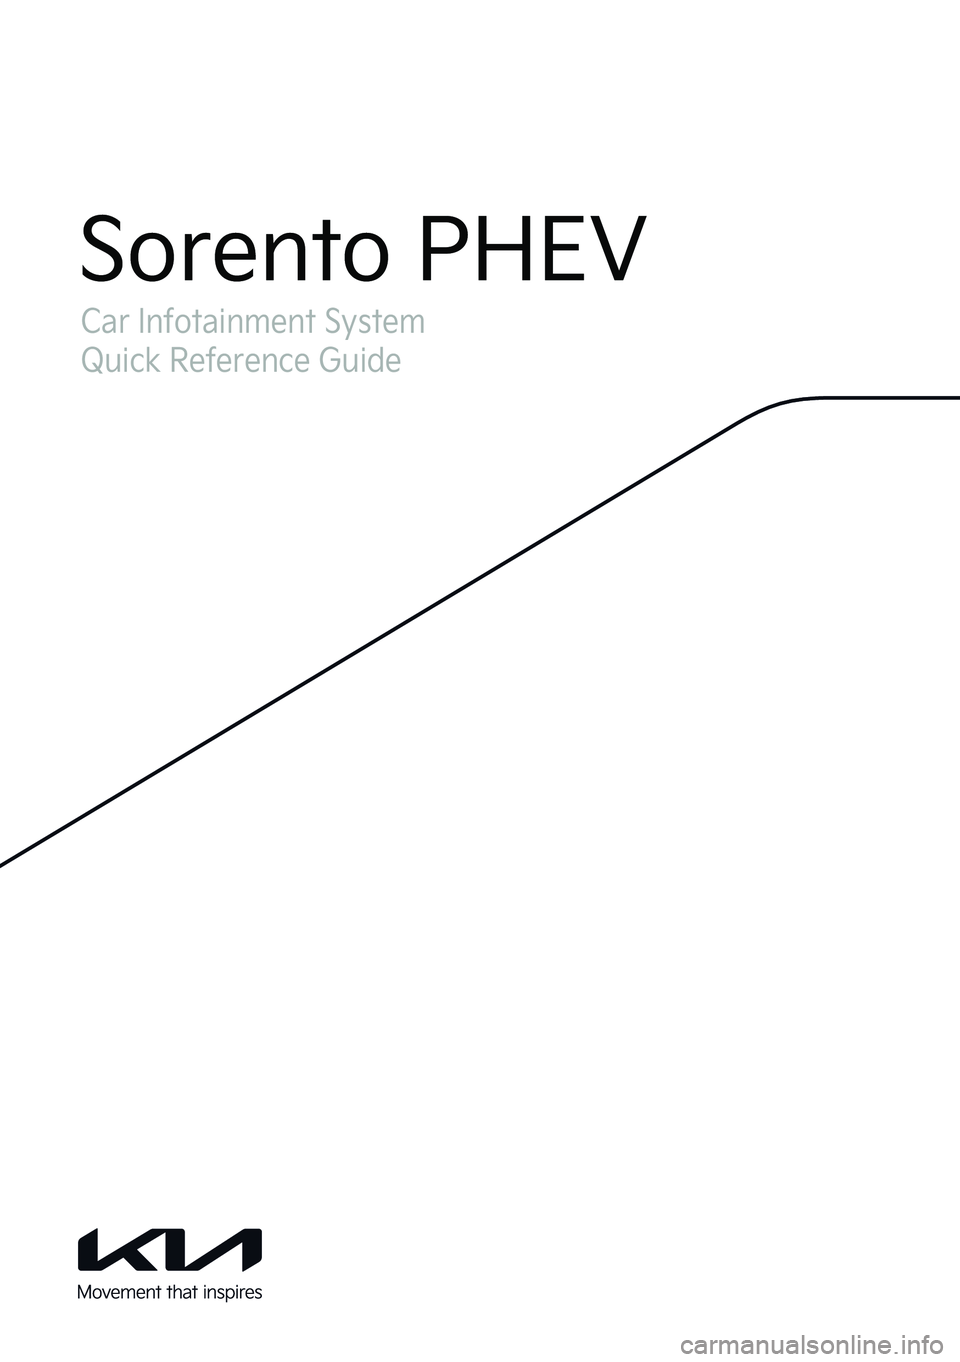 KIA SORENTO PHEV 2022  Navigation System Quick Reference Guide Car Infotainment System
Quick Reference Guide
Sorento PHEV  